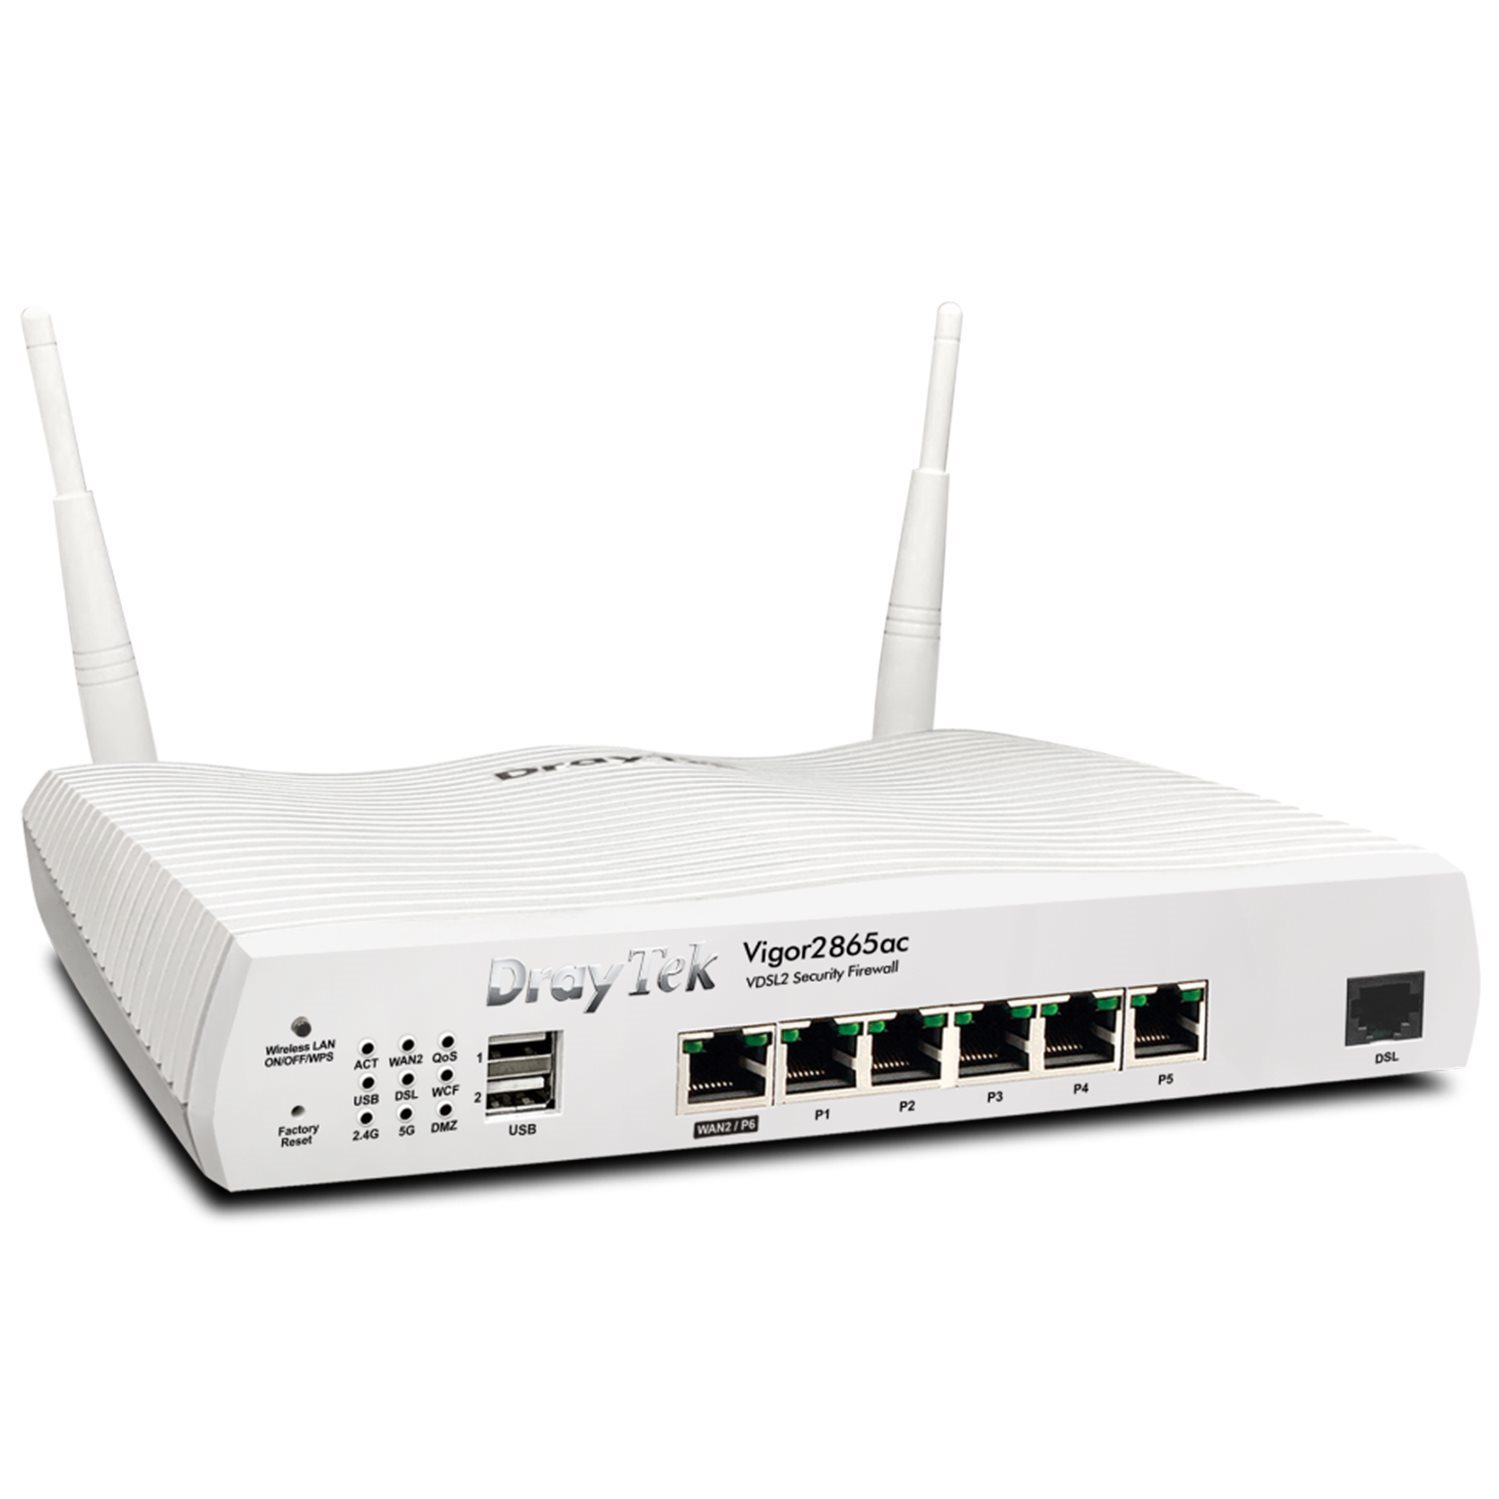   Routeurs Pro   Modem routeur multiwan Giga 32 VPN Wifi ac VIGOR2865AC